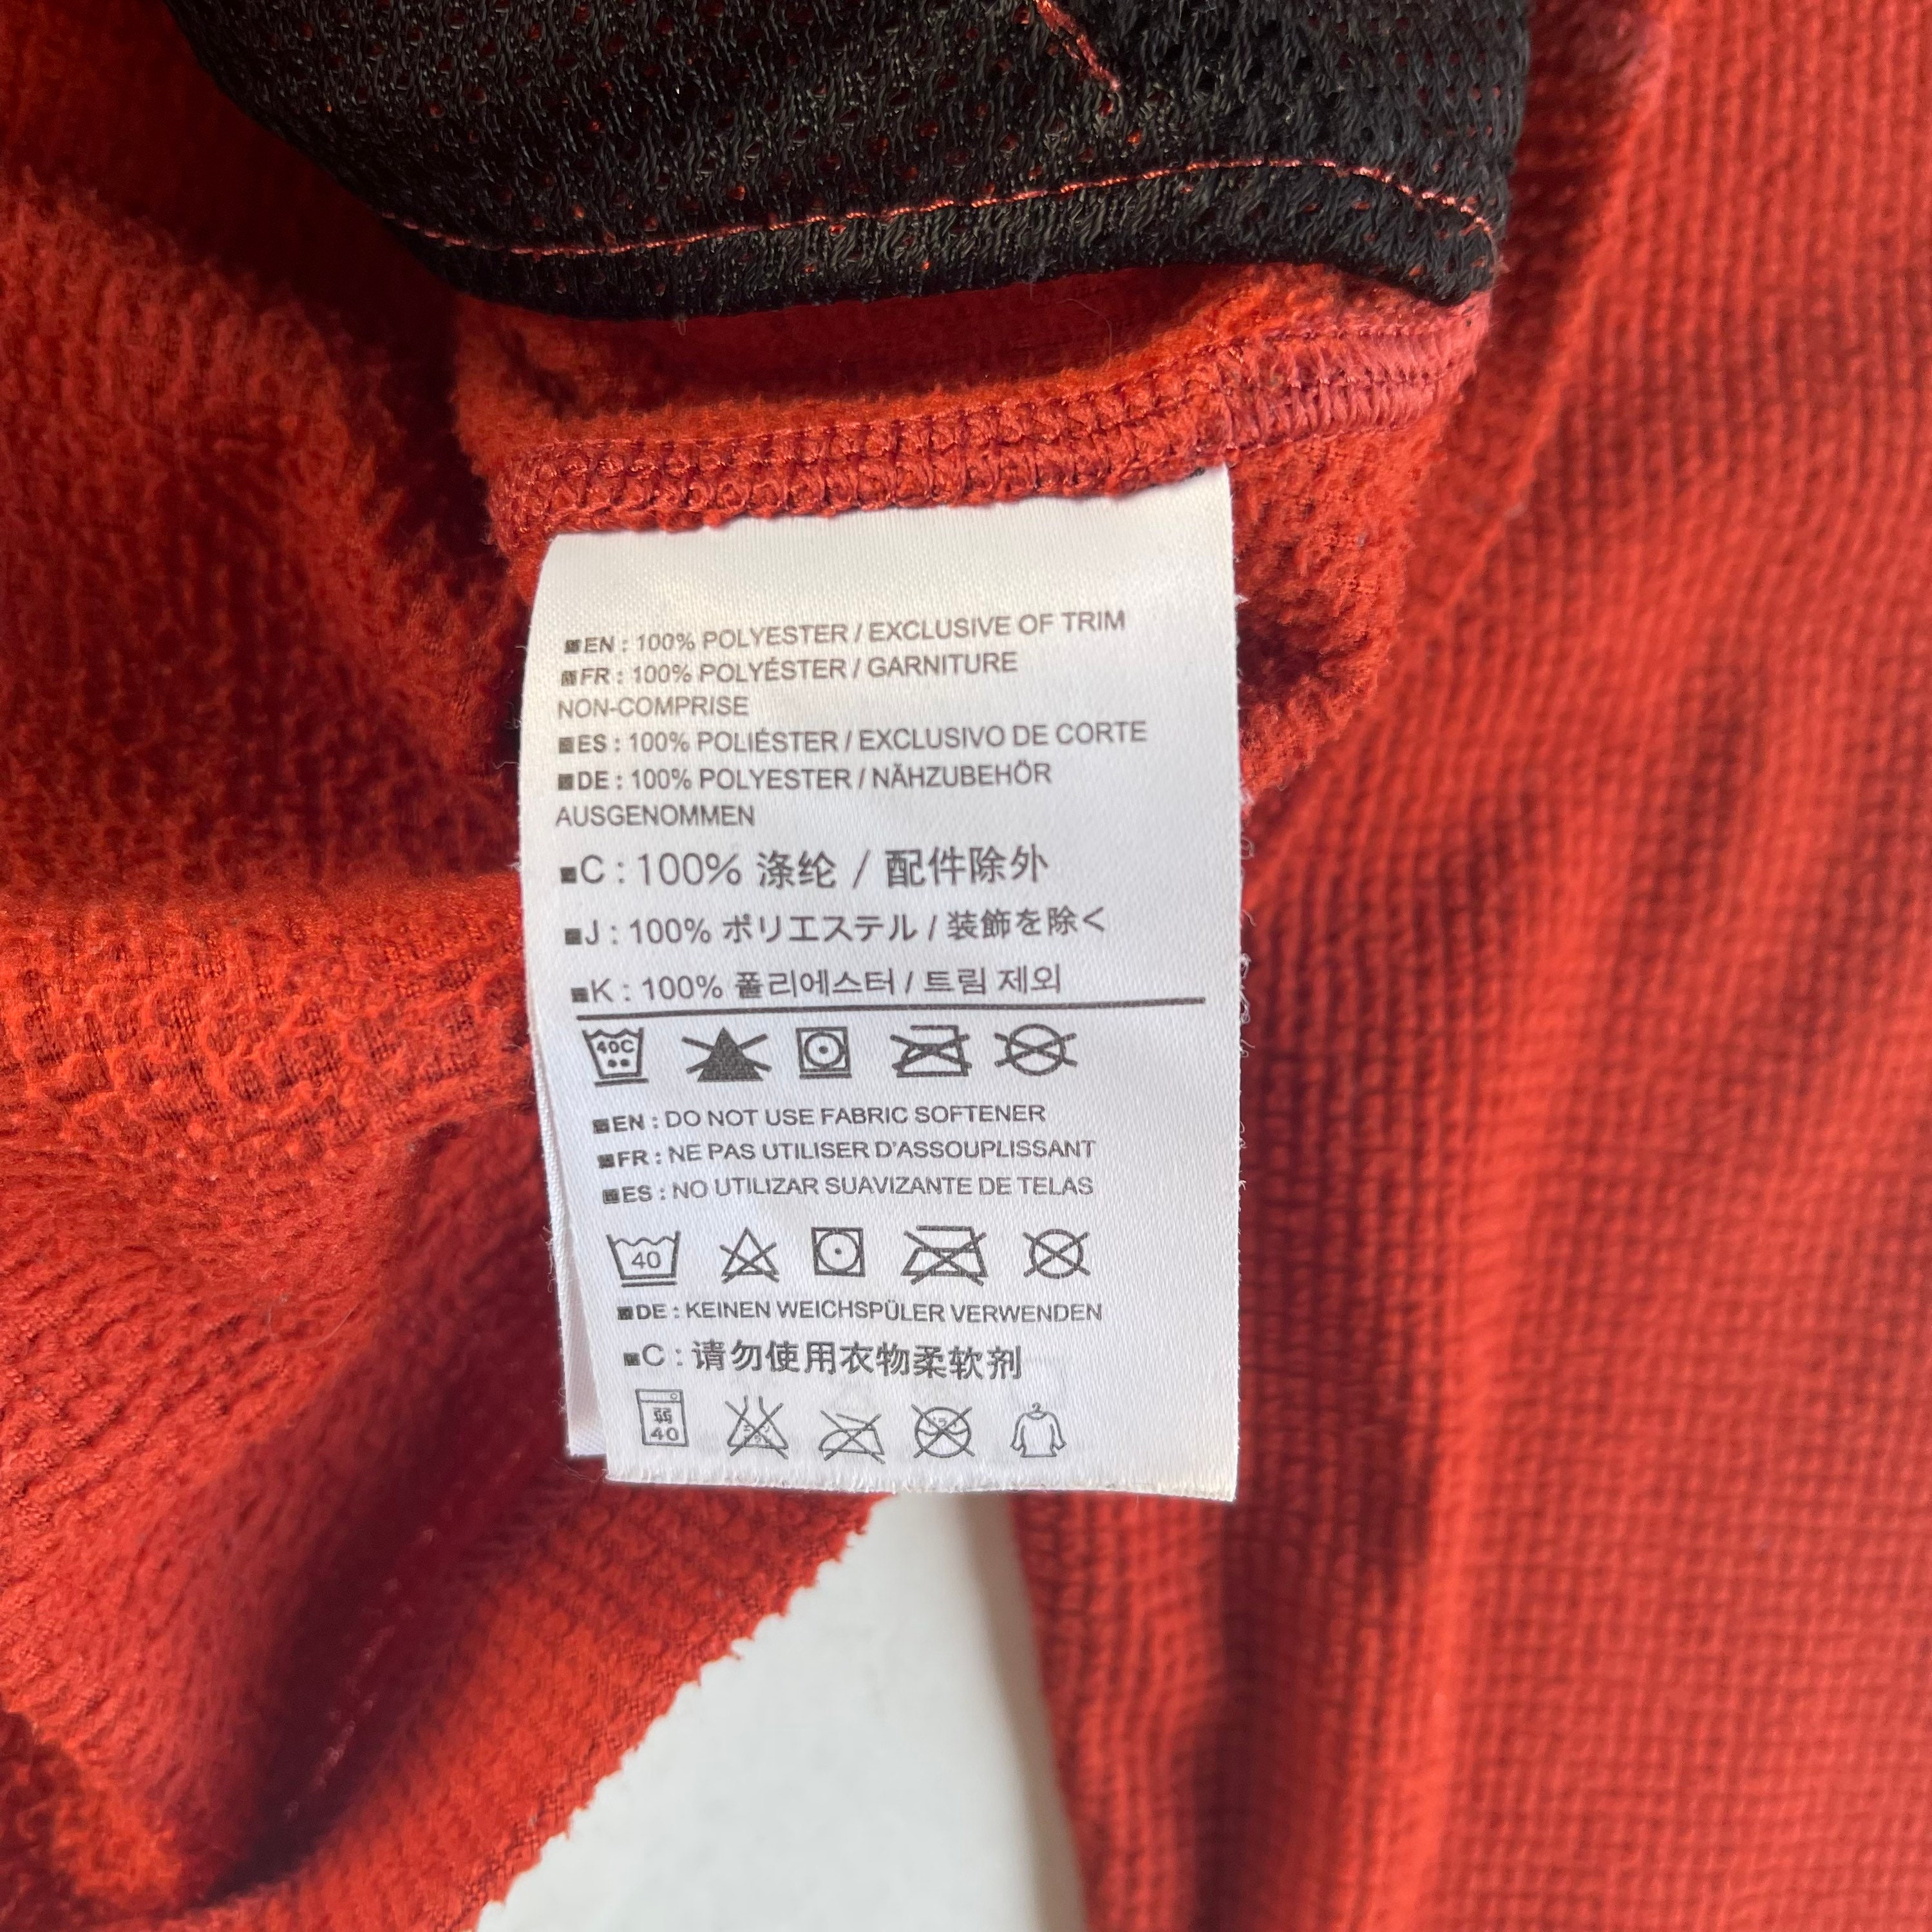 Arcteryx Techwear Fleece Sweater Full Zipper Orange Jacket - Etsy